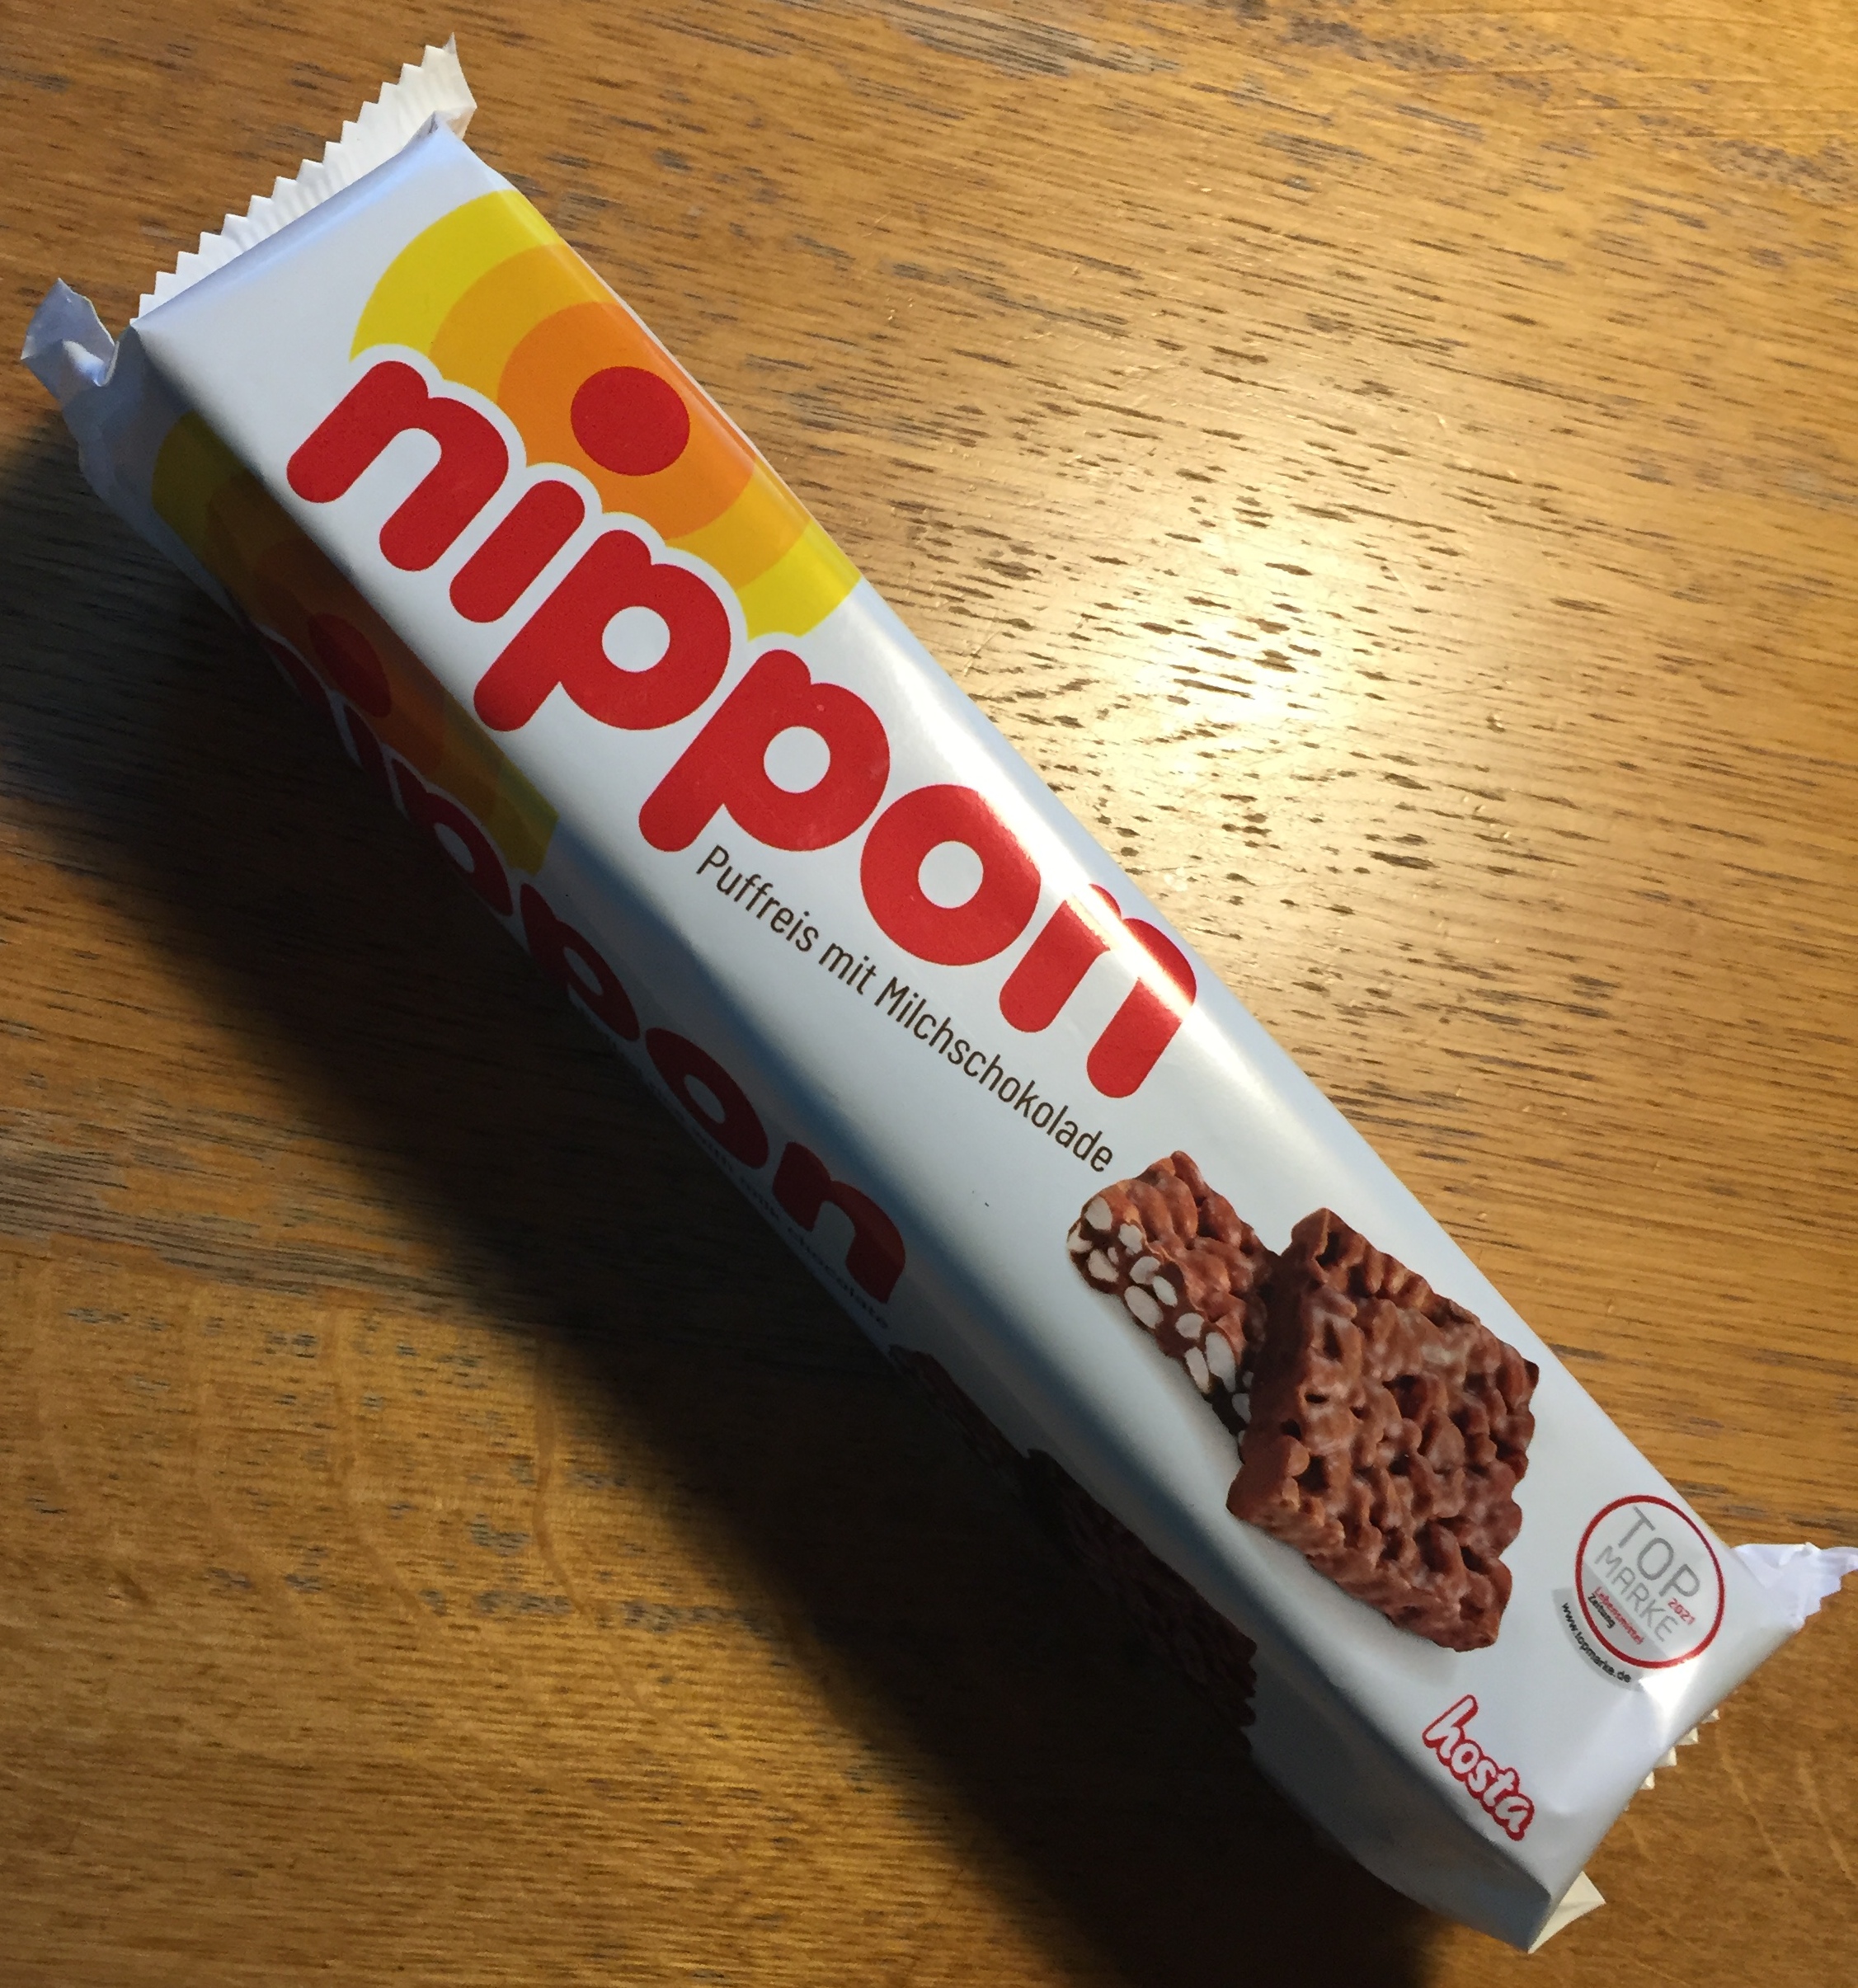 Nippon – verpuffend gut. Der crunchy Puffreis-Schokoladen-Snack.